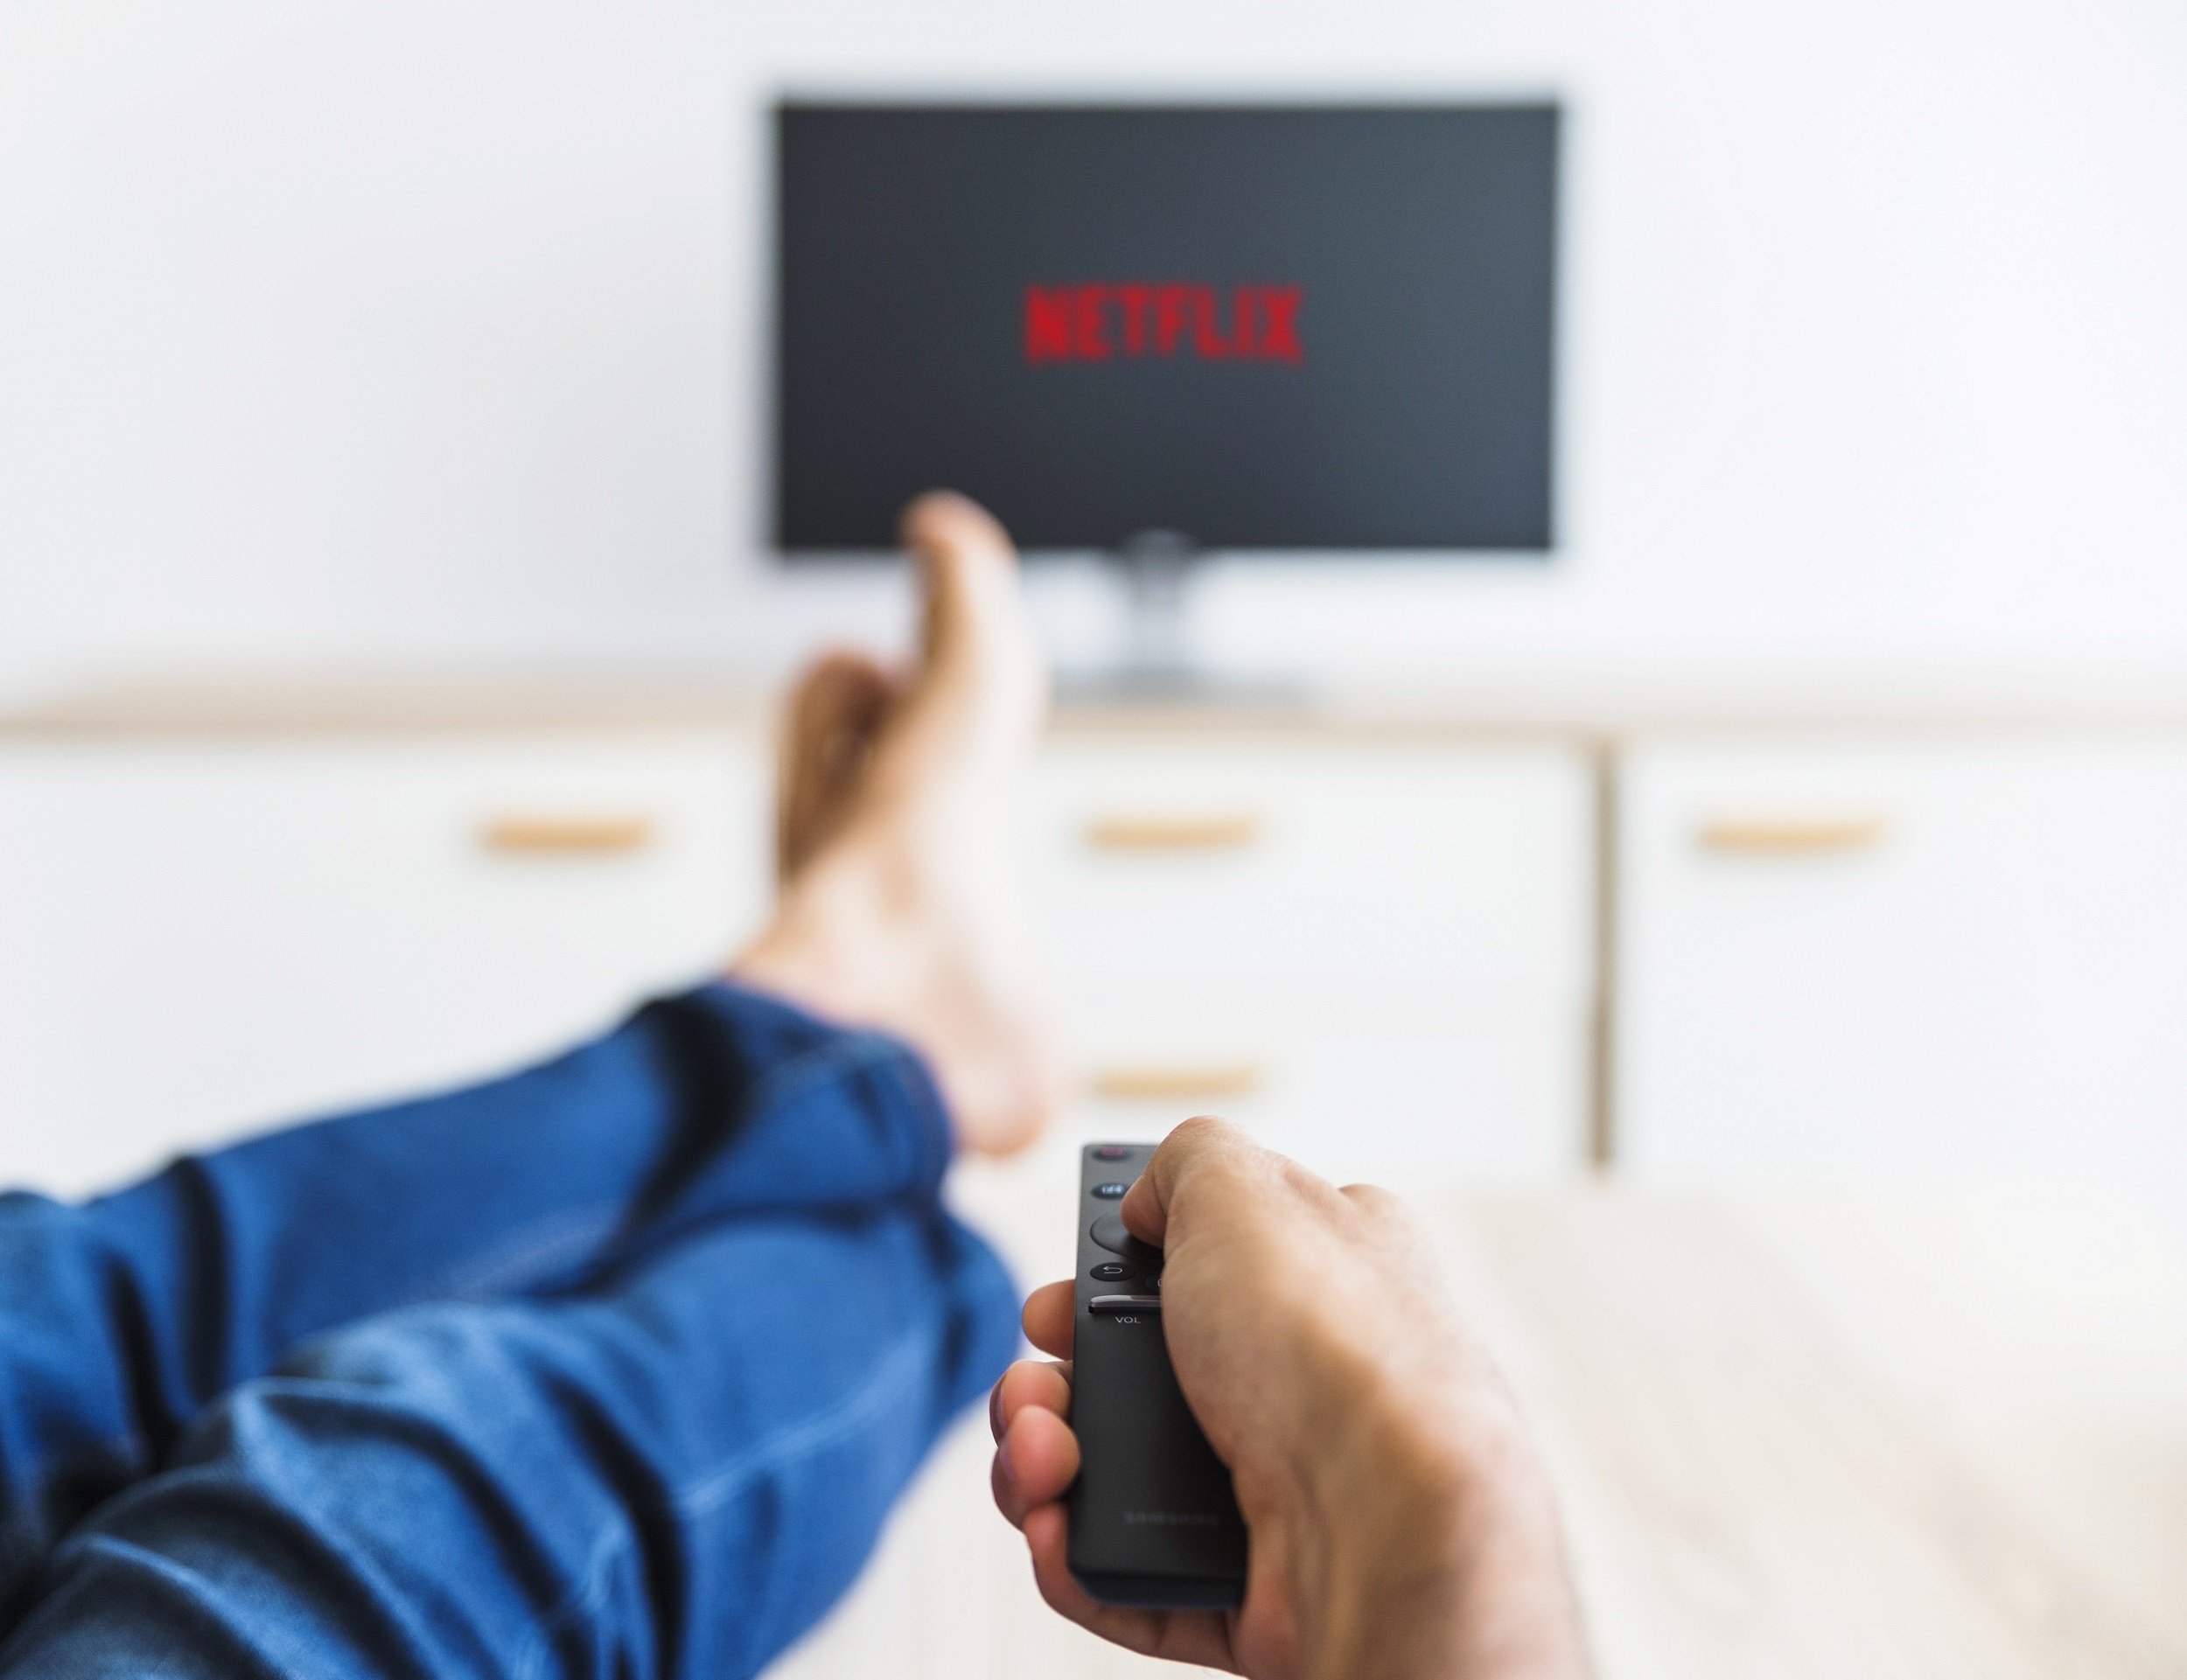 Netflix deixará de funcionar em smart TVs antigas da Samsung nos EUA e  Canadá – Tecnoblog